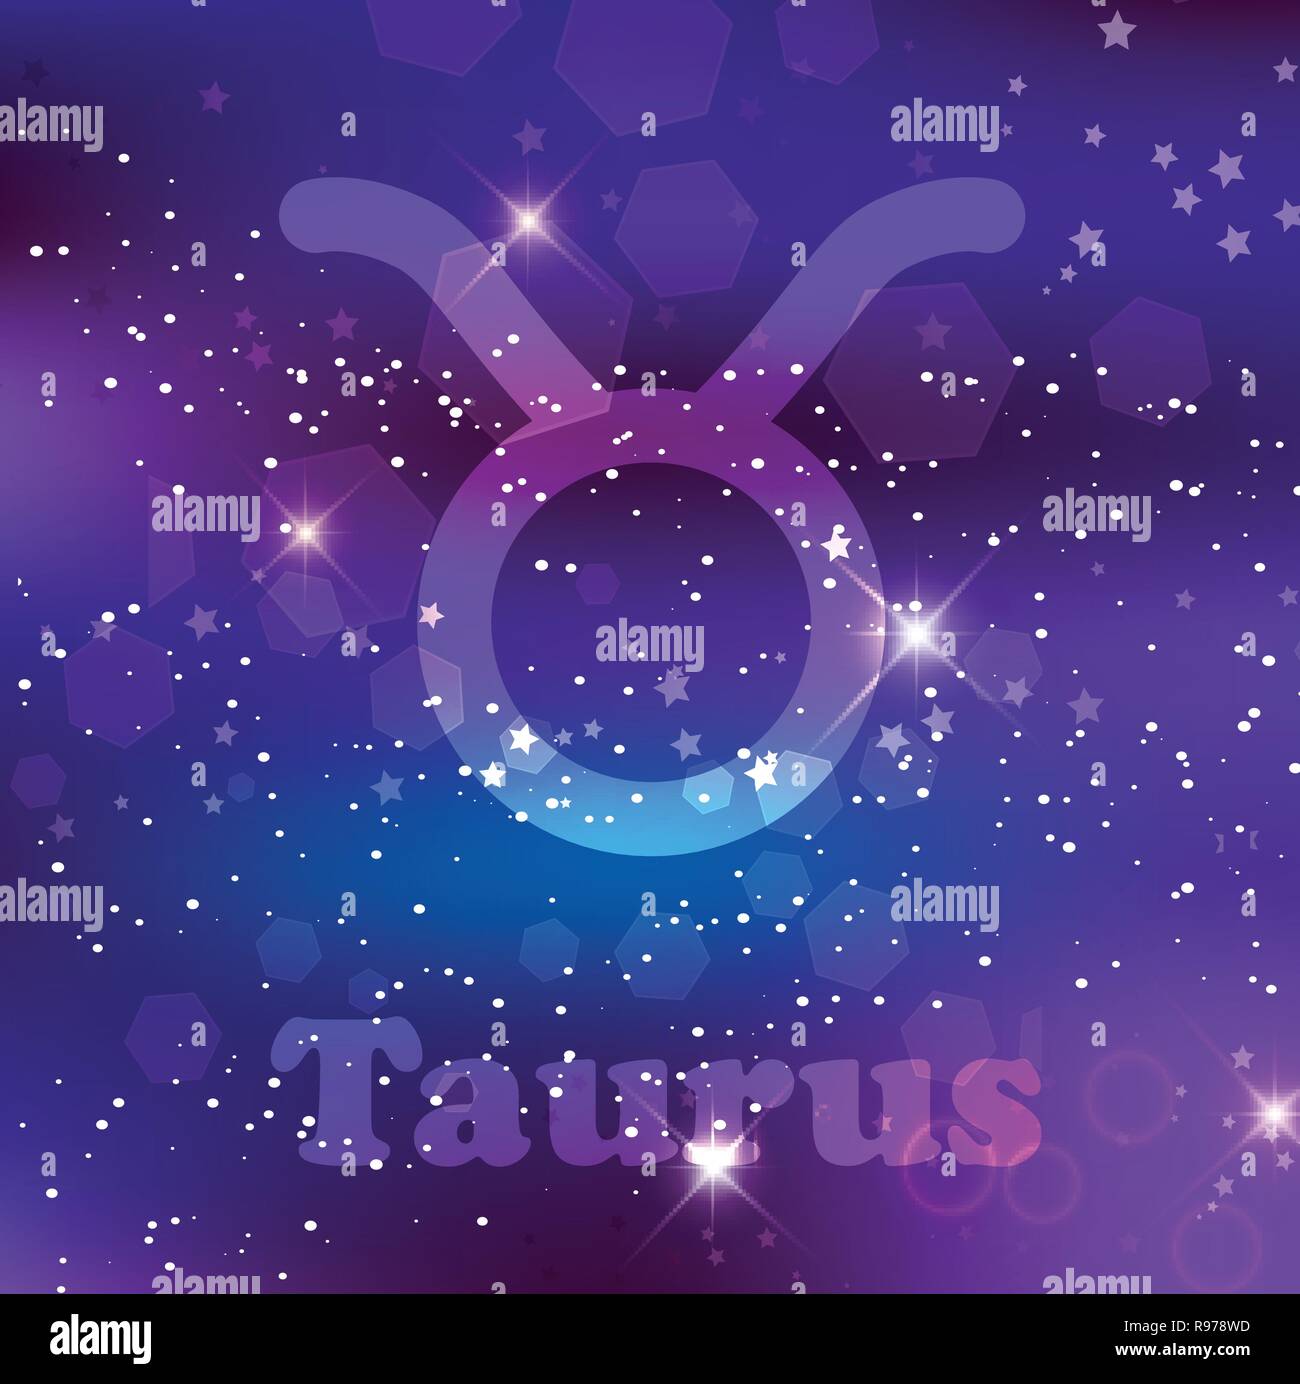 Toro segno zodiacale e costellazione sul cosmica sfondo viola con stelle luccicanti e nebulosa. Illustrazione Vettoriale, banner, poster, bull card. Spac Illustrazione Vettoriale